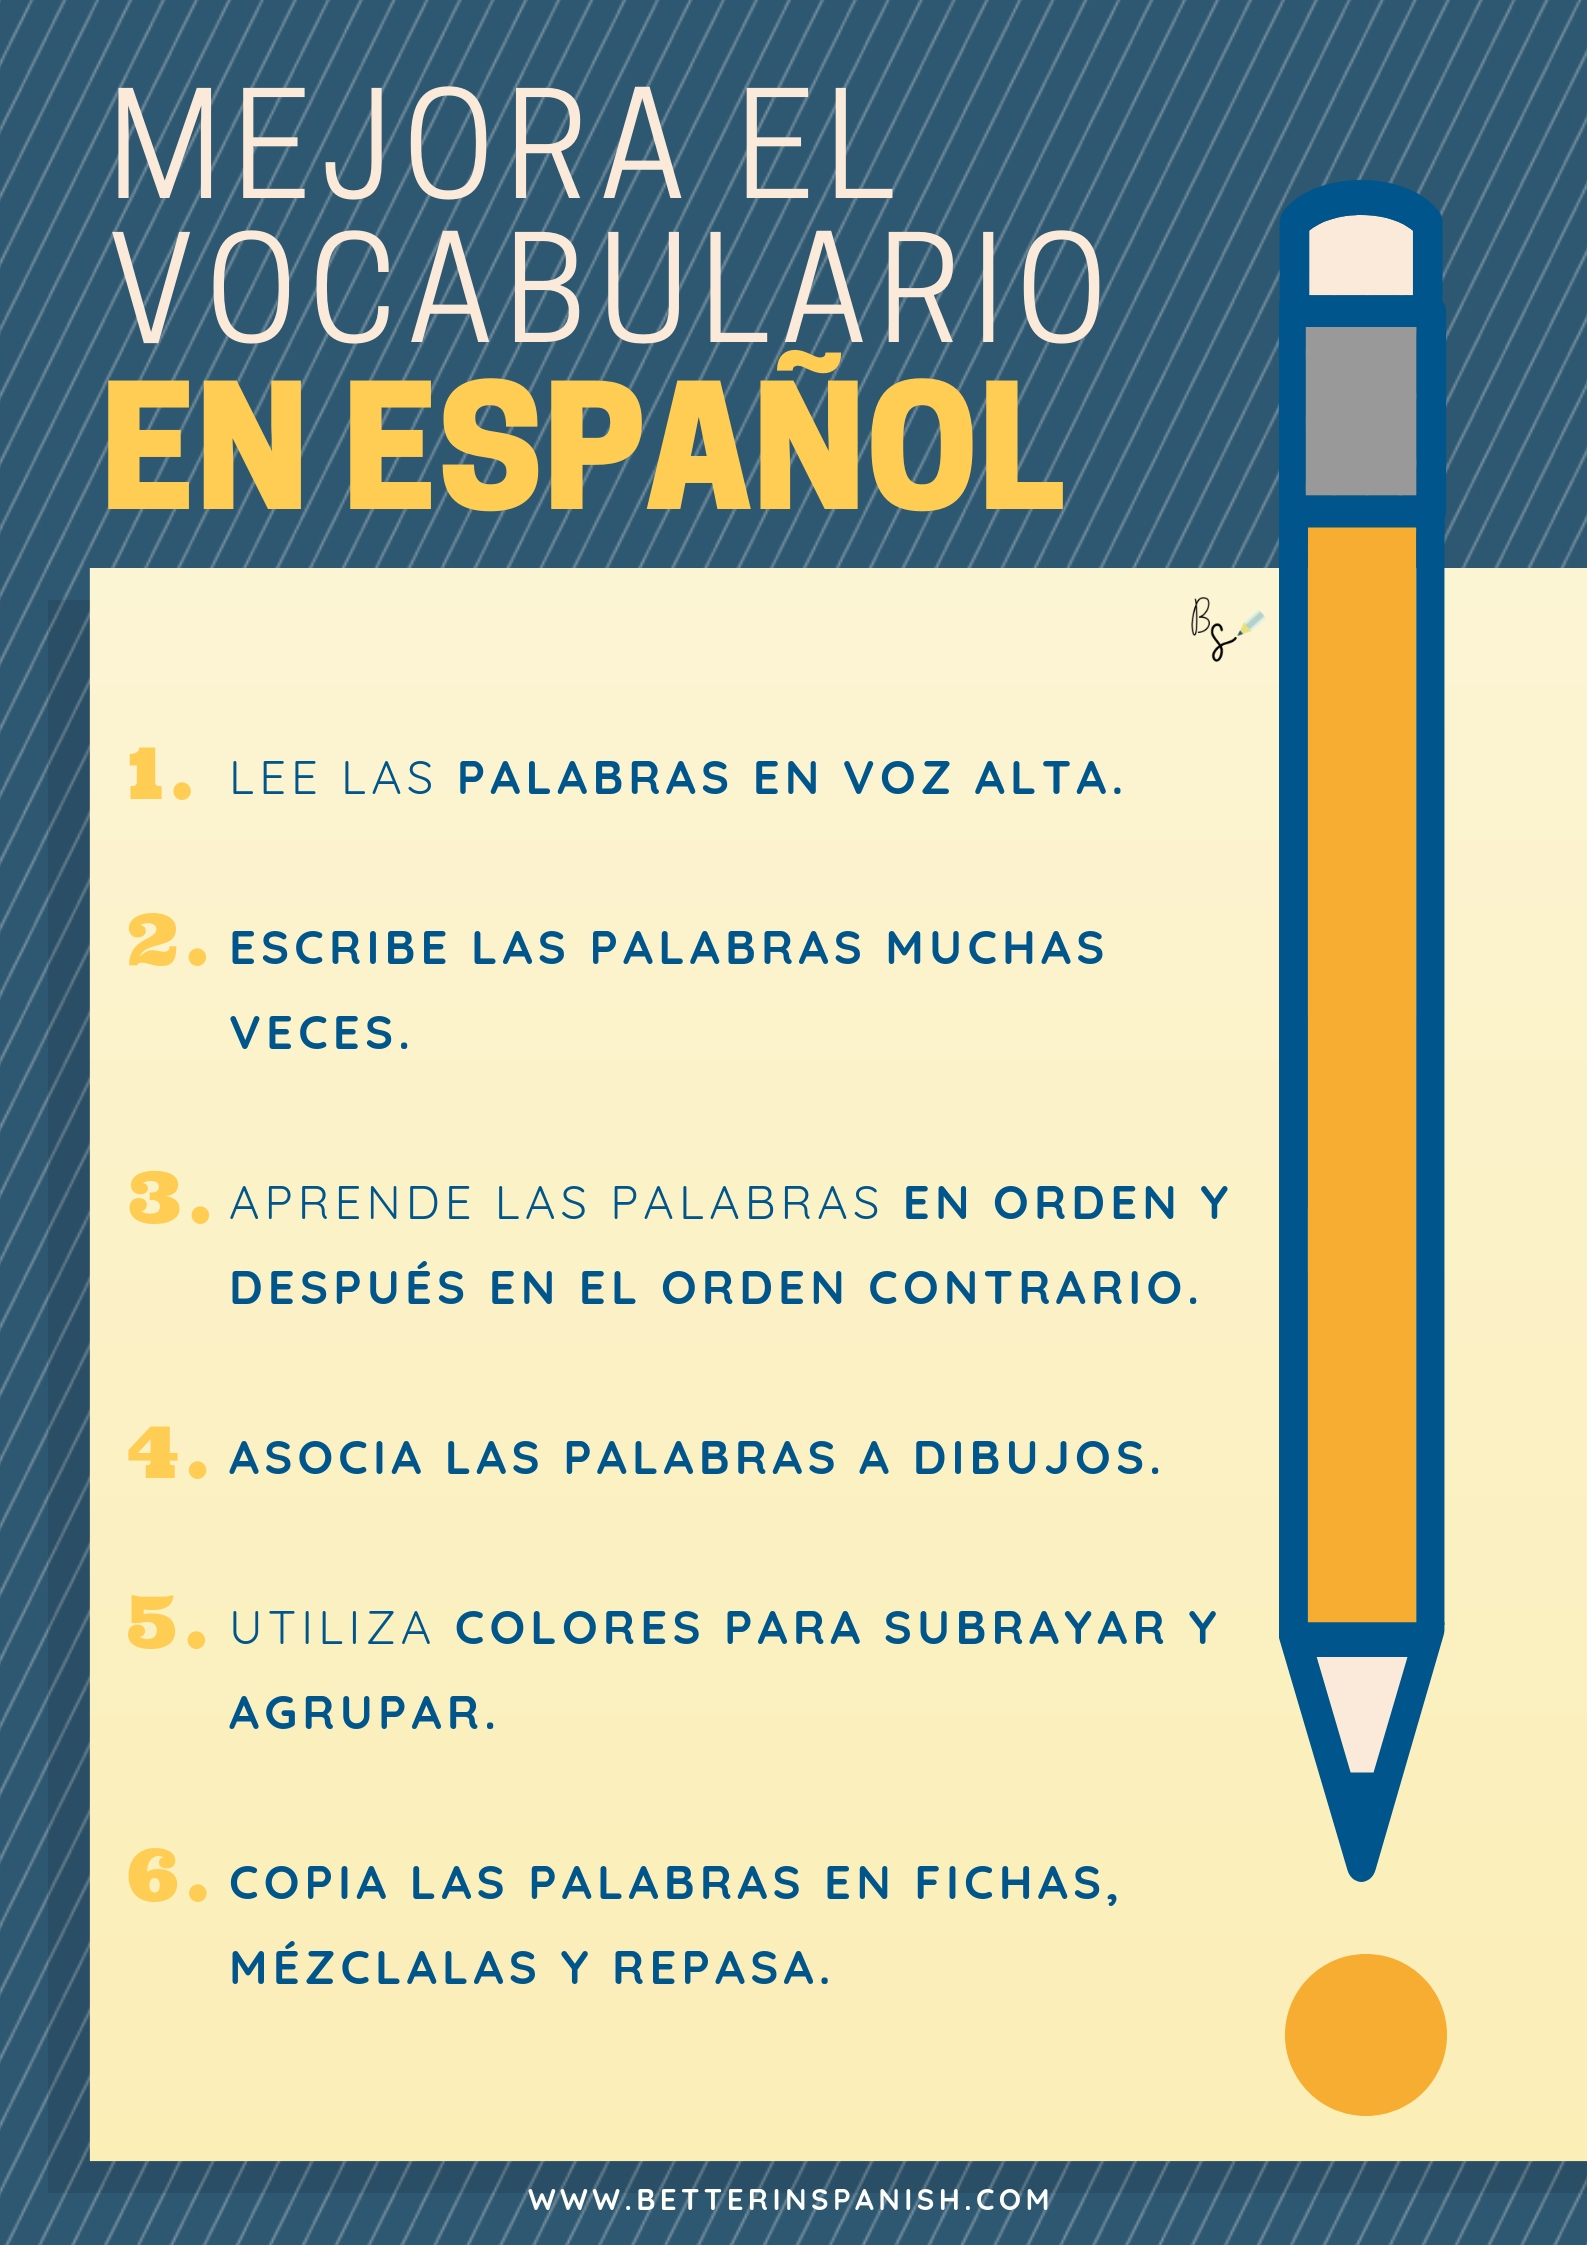 Mejora el vocabulario en español